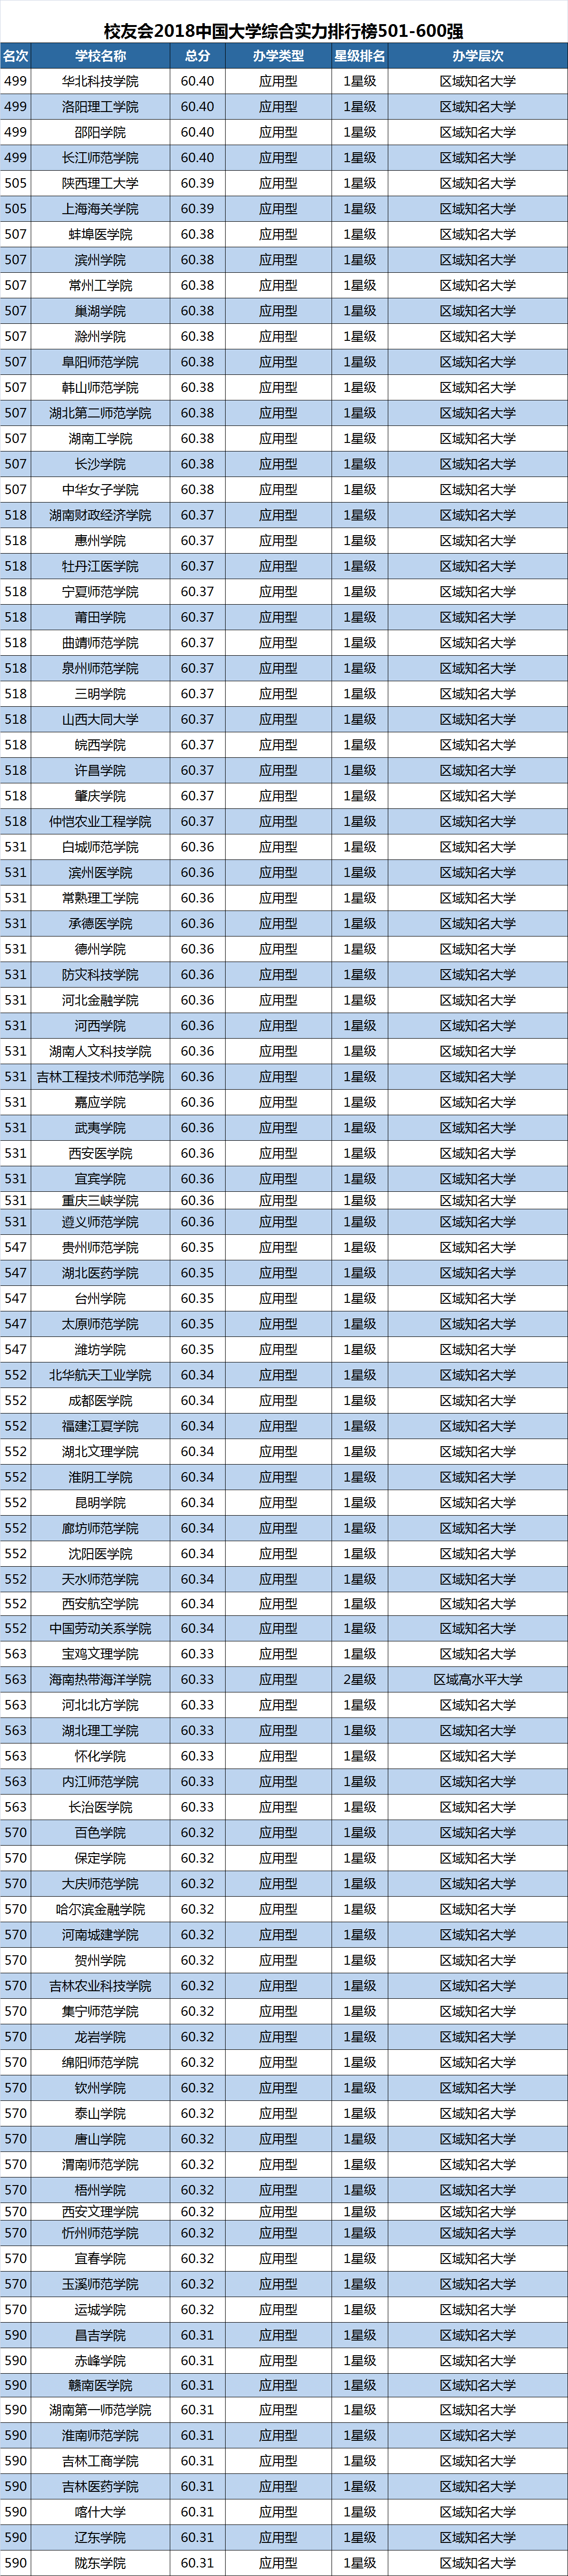 中国最好的大学 - 392所野鸡大学(3) 教育 热图7